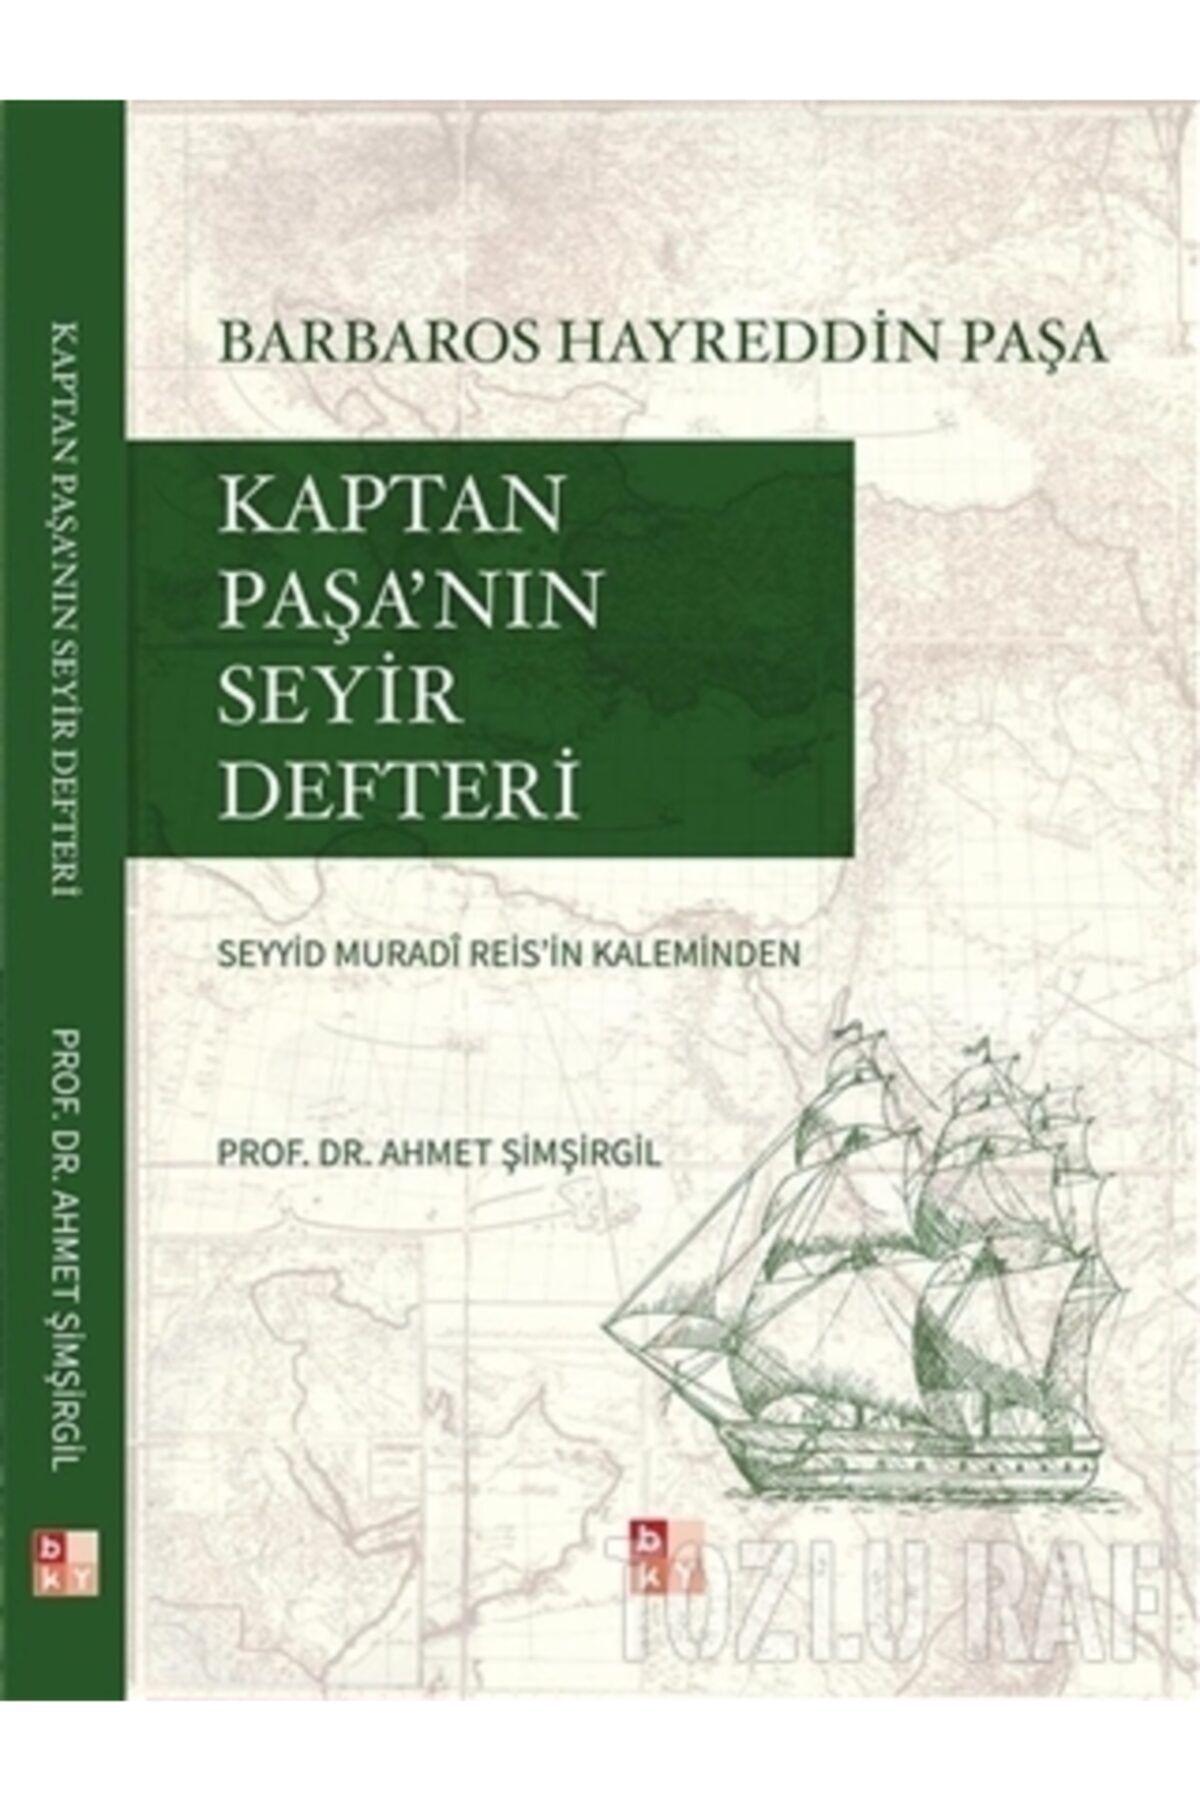 Babıali Kültür Yayıncılığı Kaptan Paşa'nın Seyir Defteri